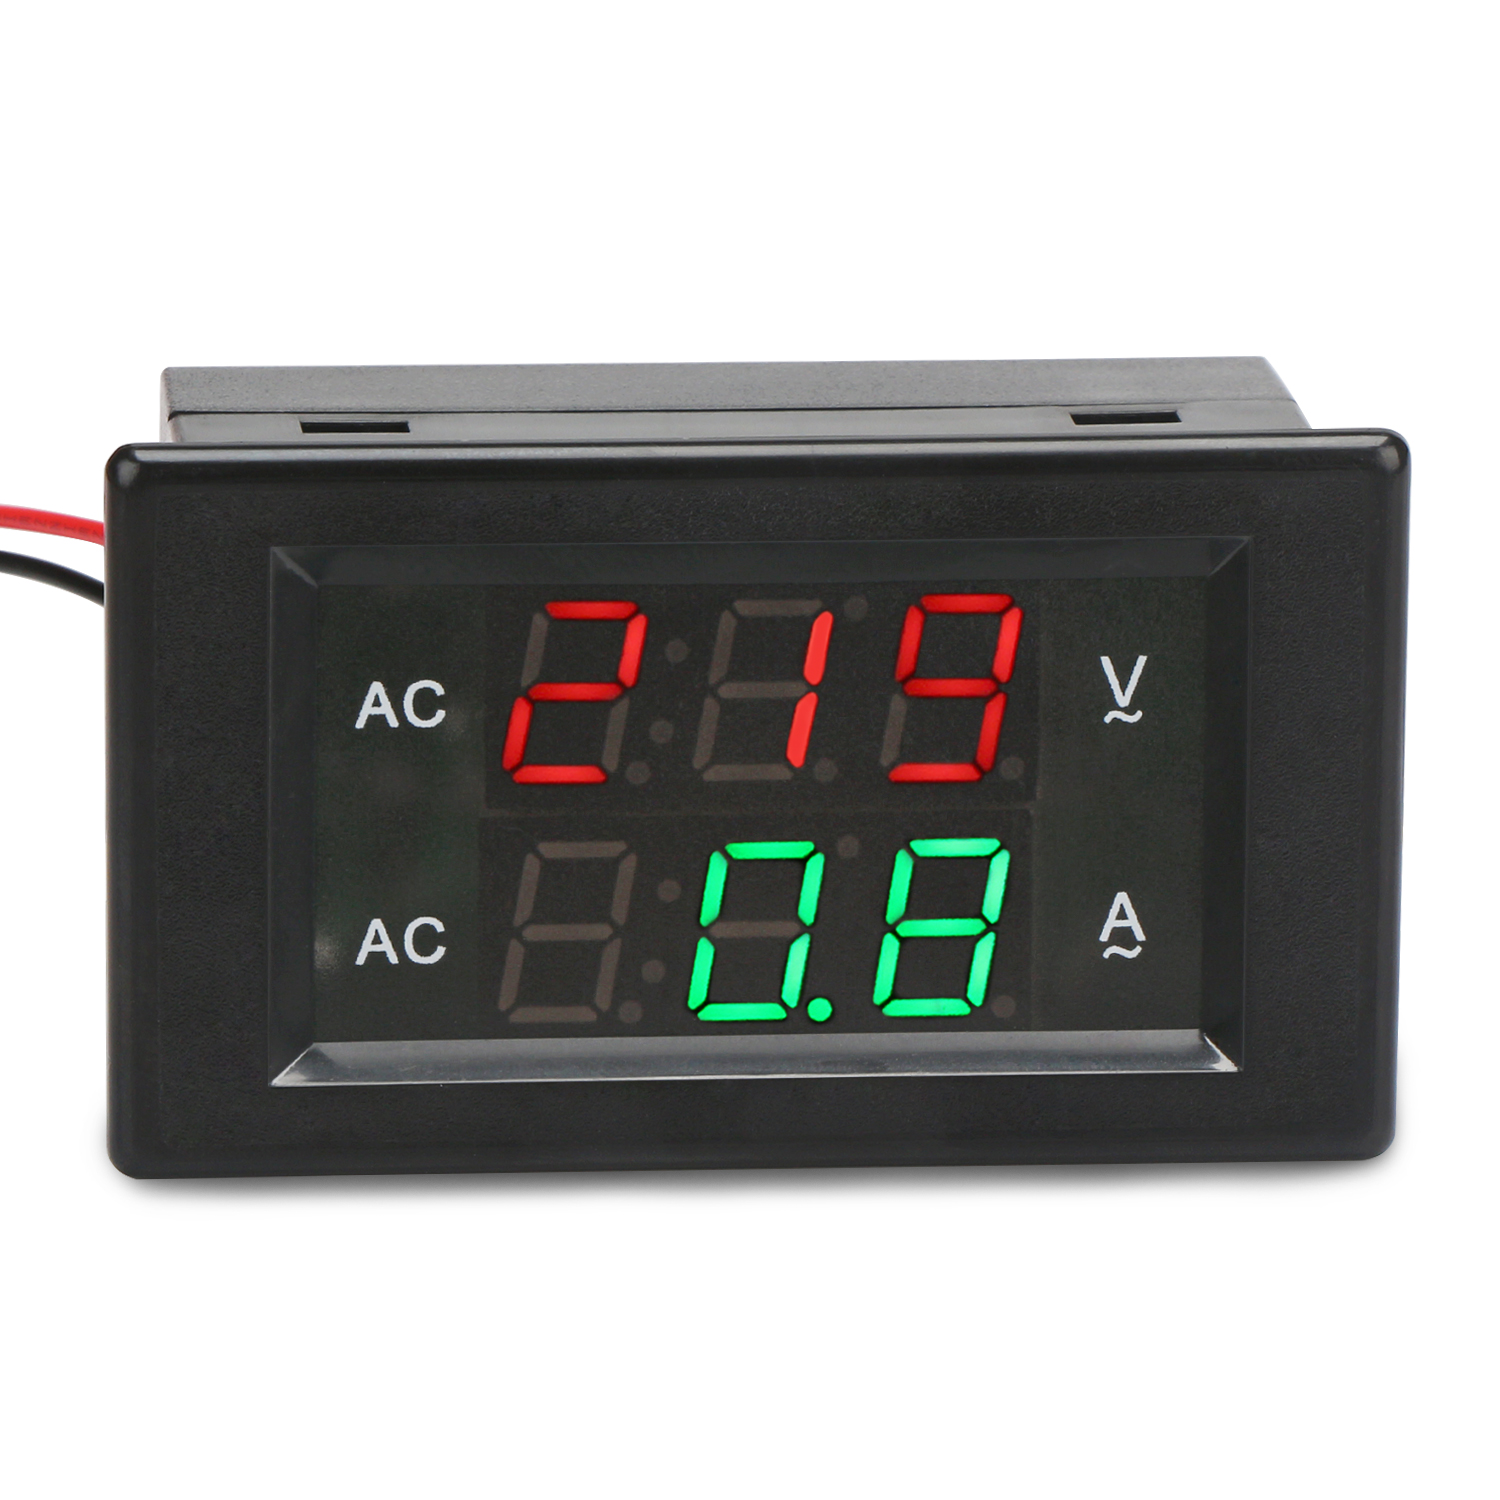 Details about   D85-2042A Ammeter Voltmeter Dual LCD Display Current Meter AC80-300V 200-450V 